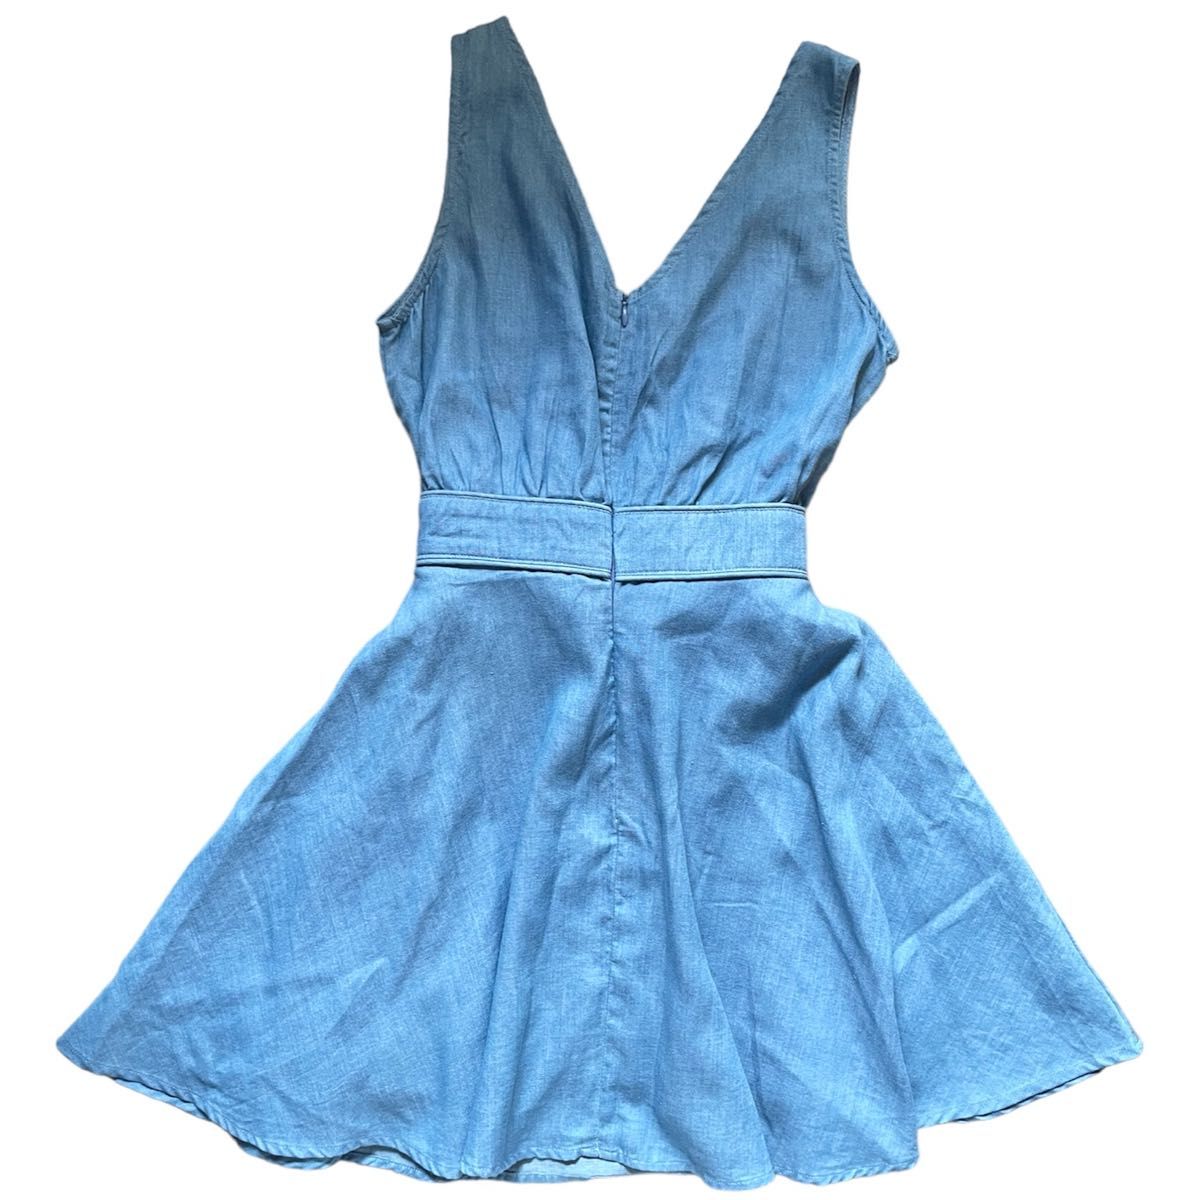 【シワあり】 MIIA ミーア ジャンパースカート リボン ワンピース デニム ウエストマーク ブルー フリーサイズ  未使用 